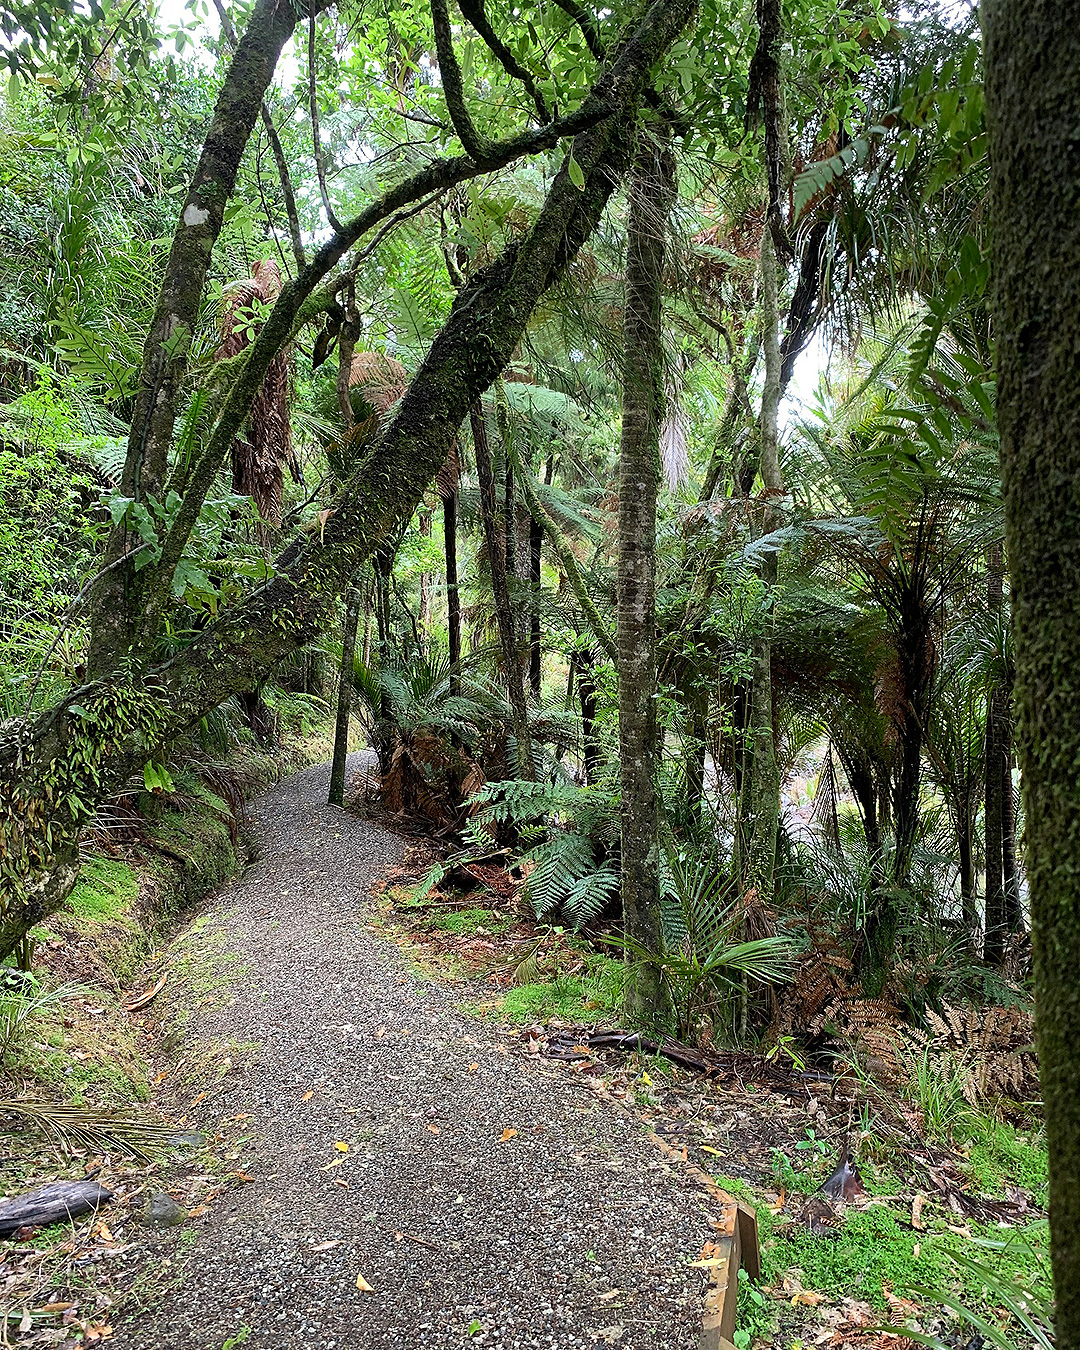 The Cascade Kauri path through the forest.